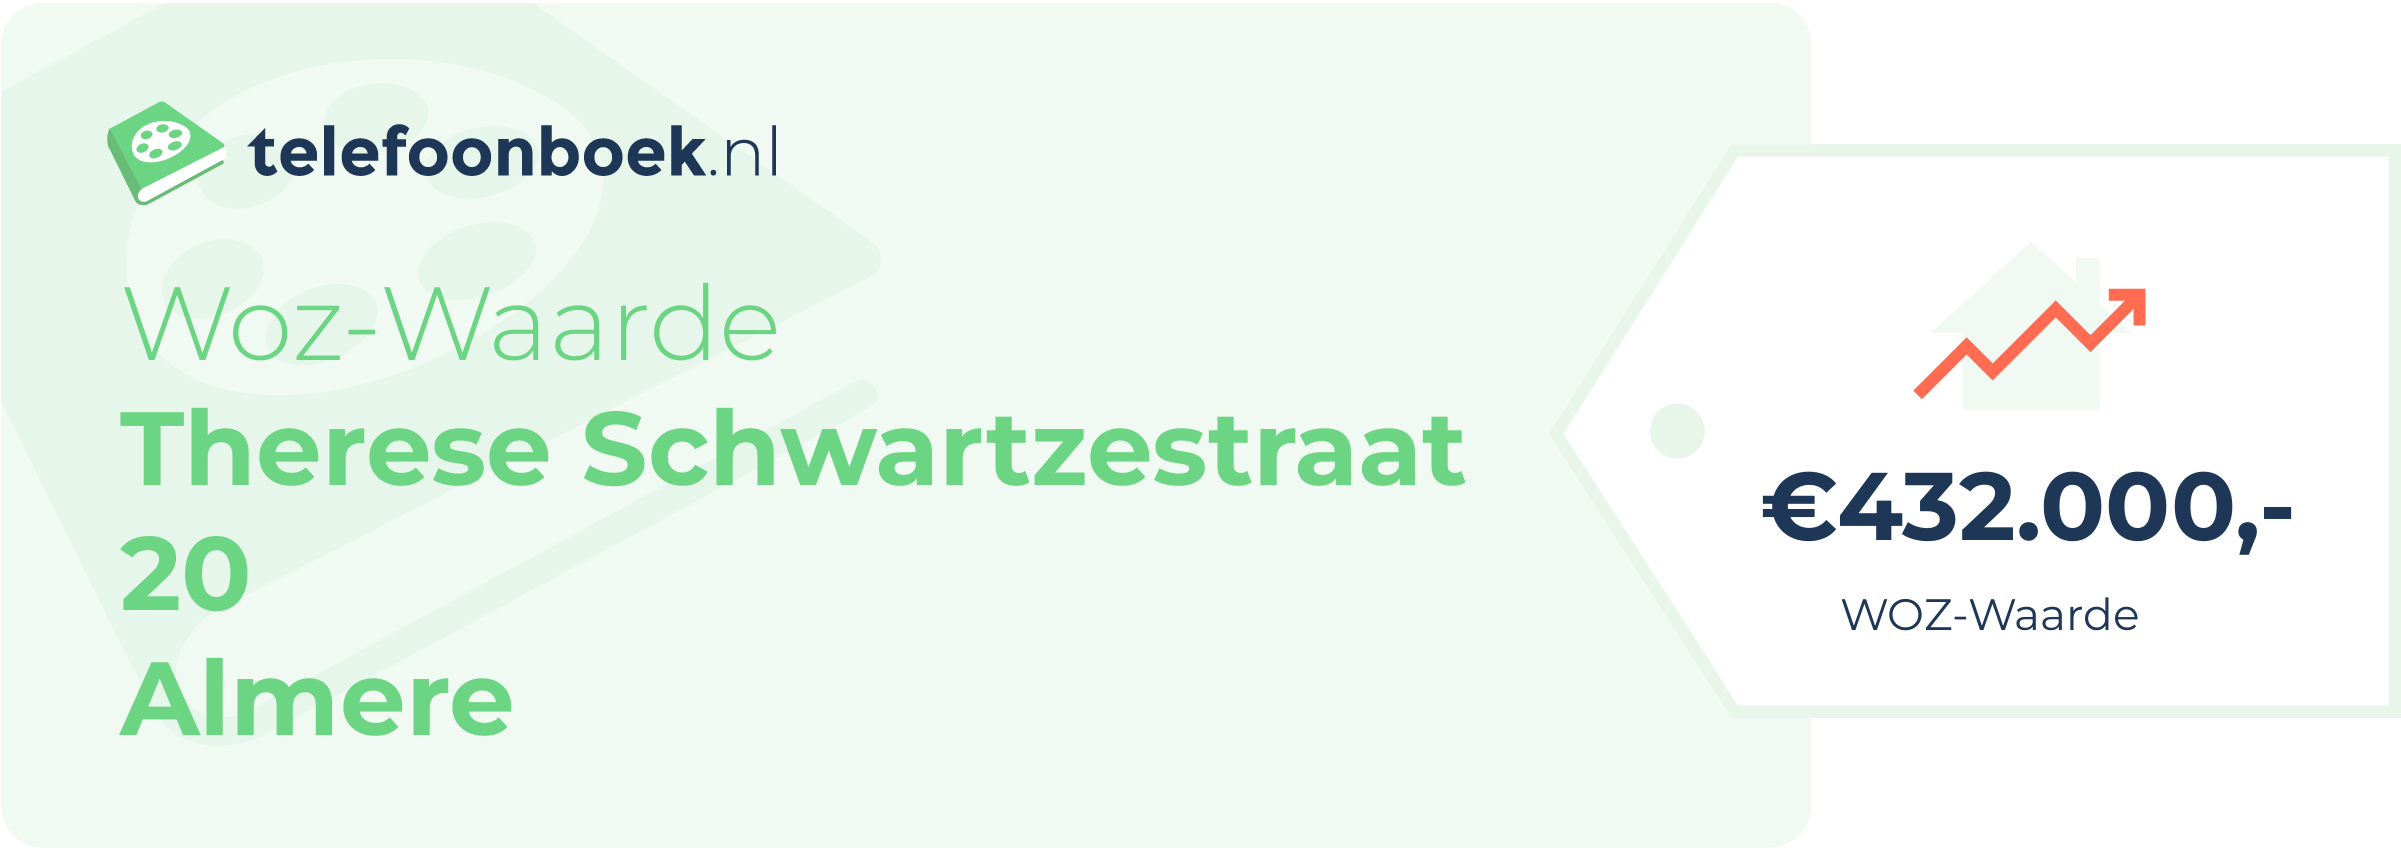 WOZ-waarde Therese Schwartzestraat 20 Almere